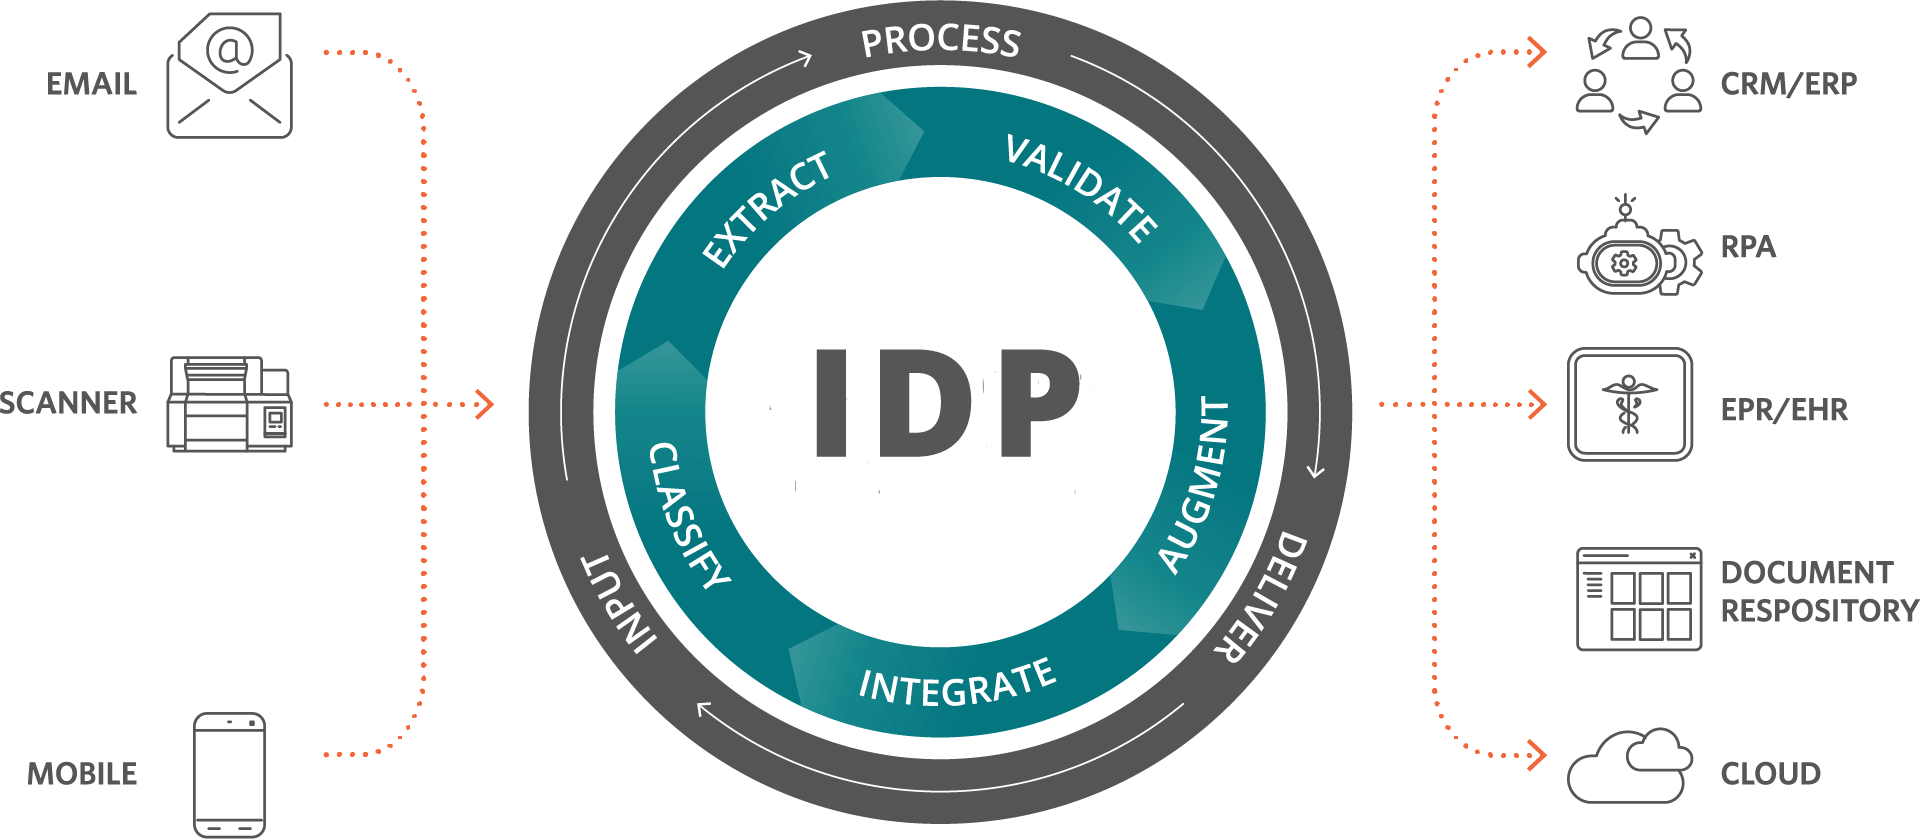 IDP 进程